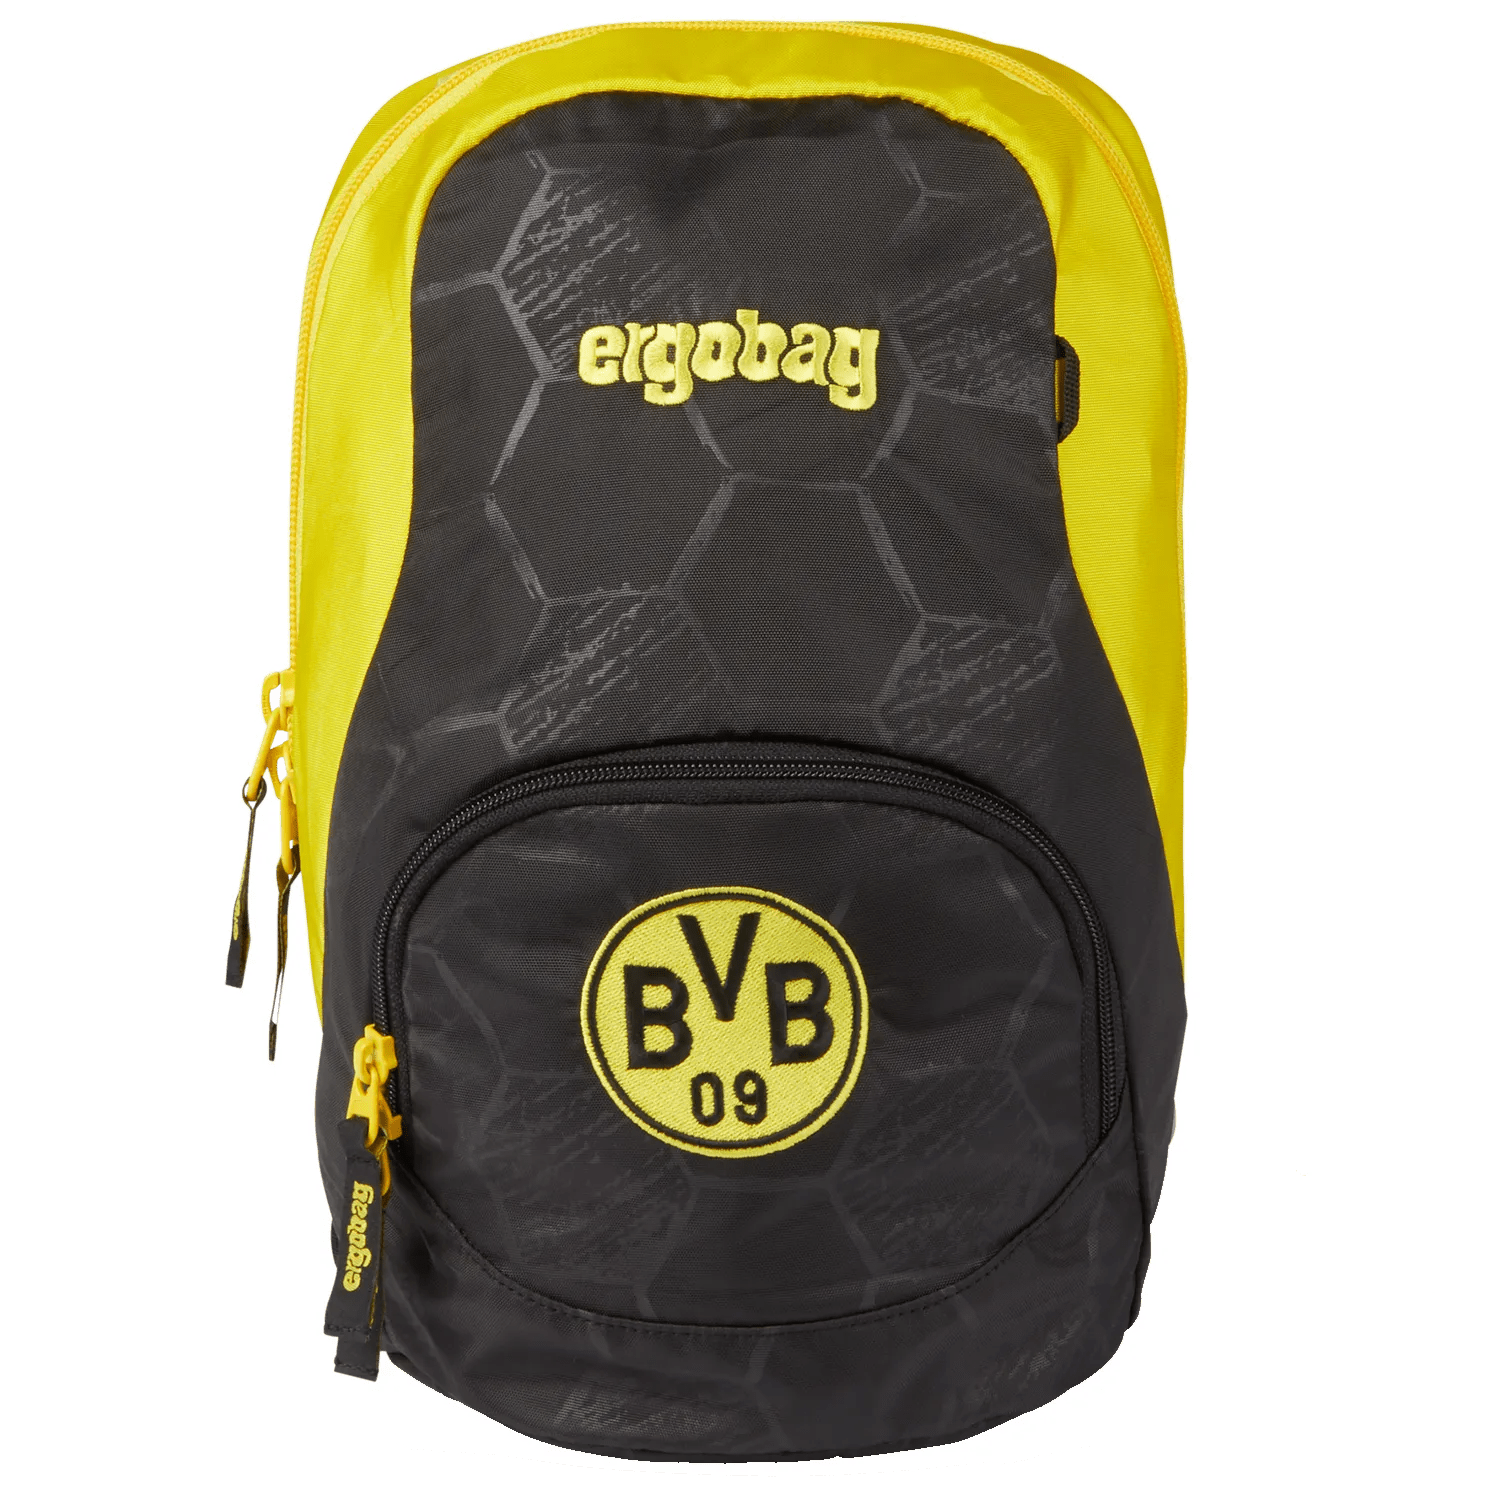 Ergobag Ease Small children's backpack 30 cm - Borussia Dortmund